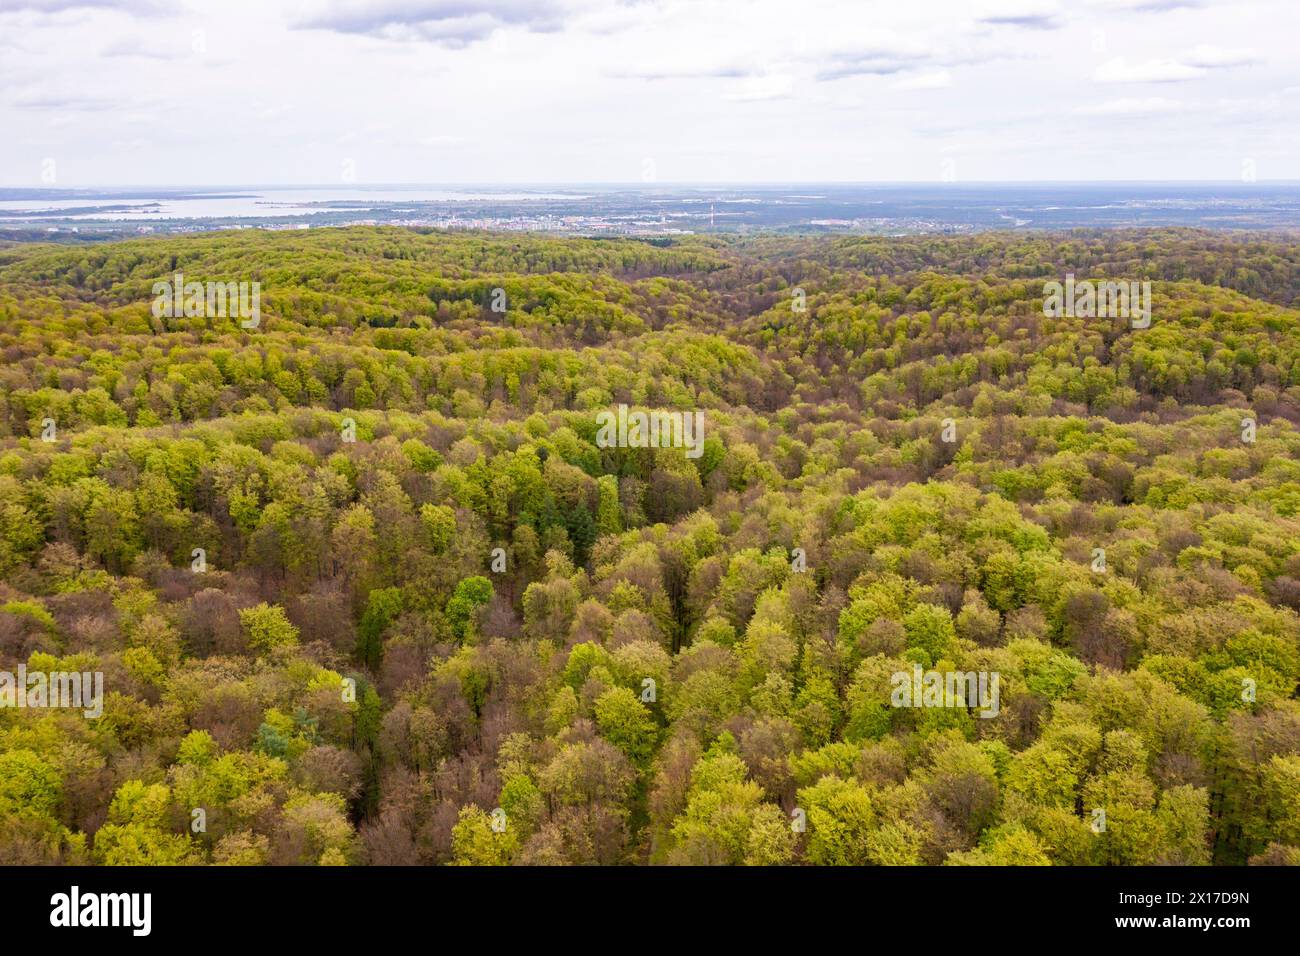 Beau paysage de forêt printanière, feuilles vertes fraîches sur les arbres au printemps, vue depuis le drone. Banque D'Images